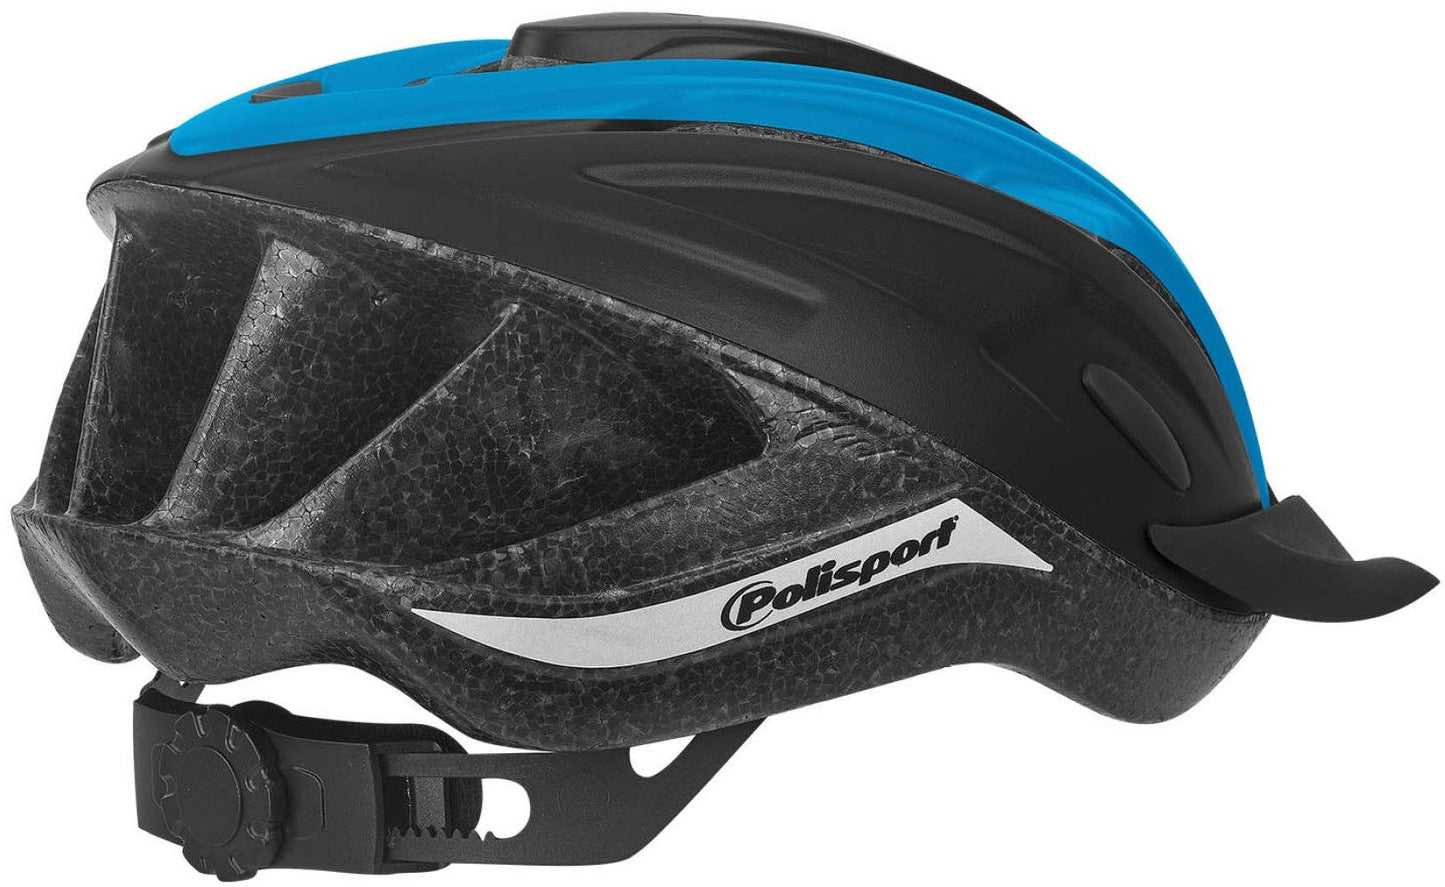 Polispgoudt Ride in casco. Dimensione: m (54 58 cm), colore: nero blauww matt